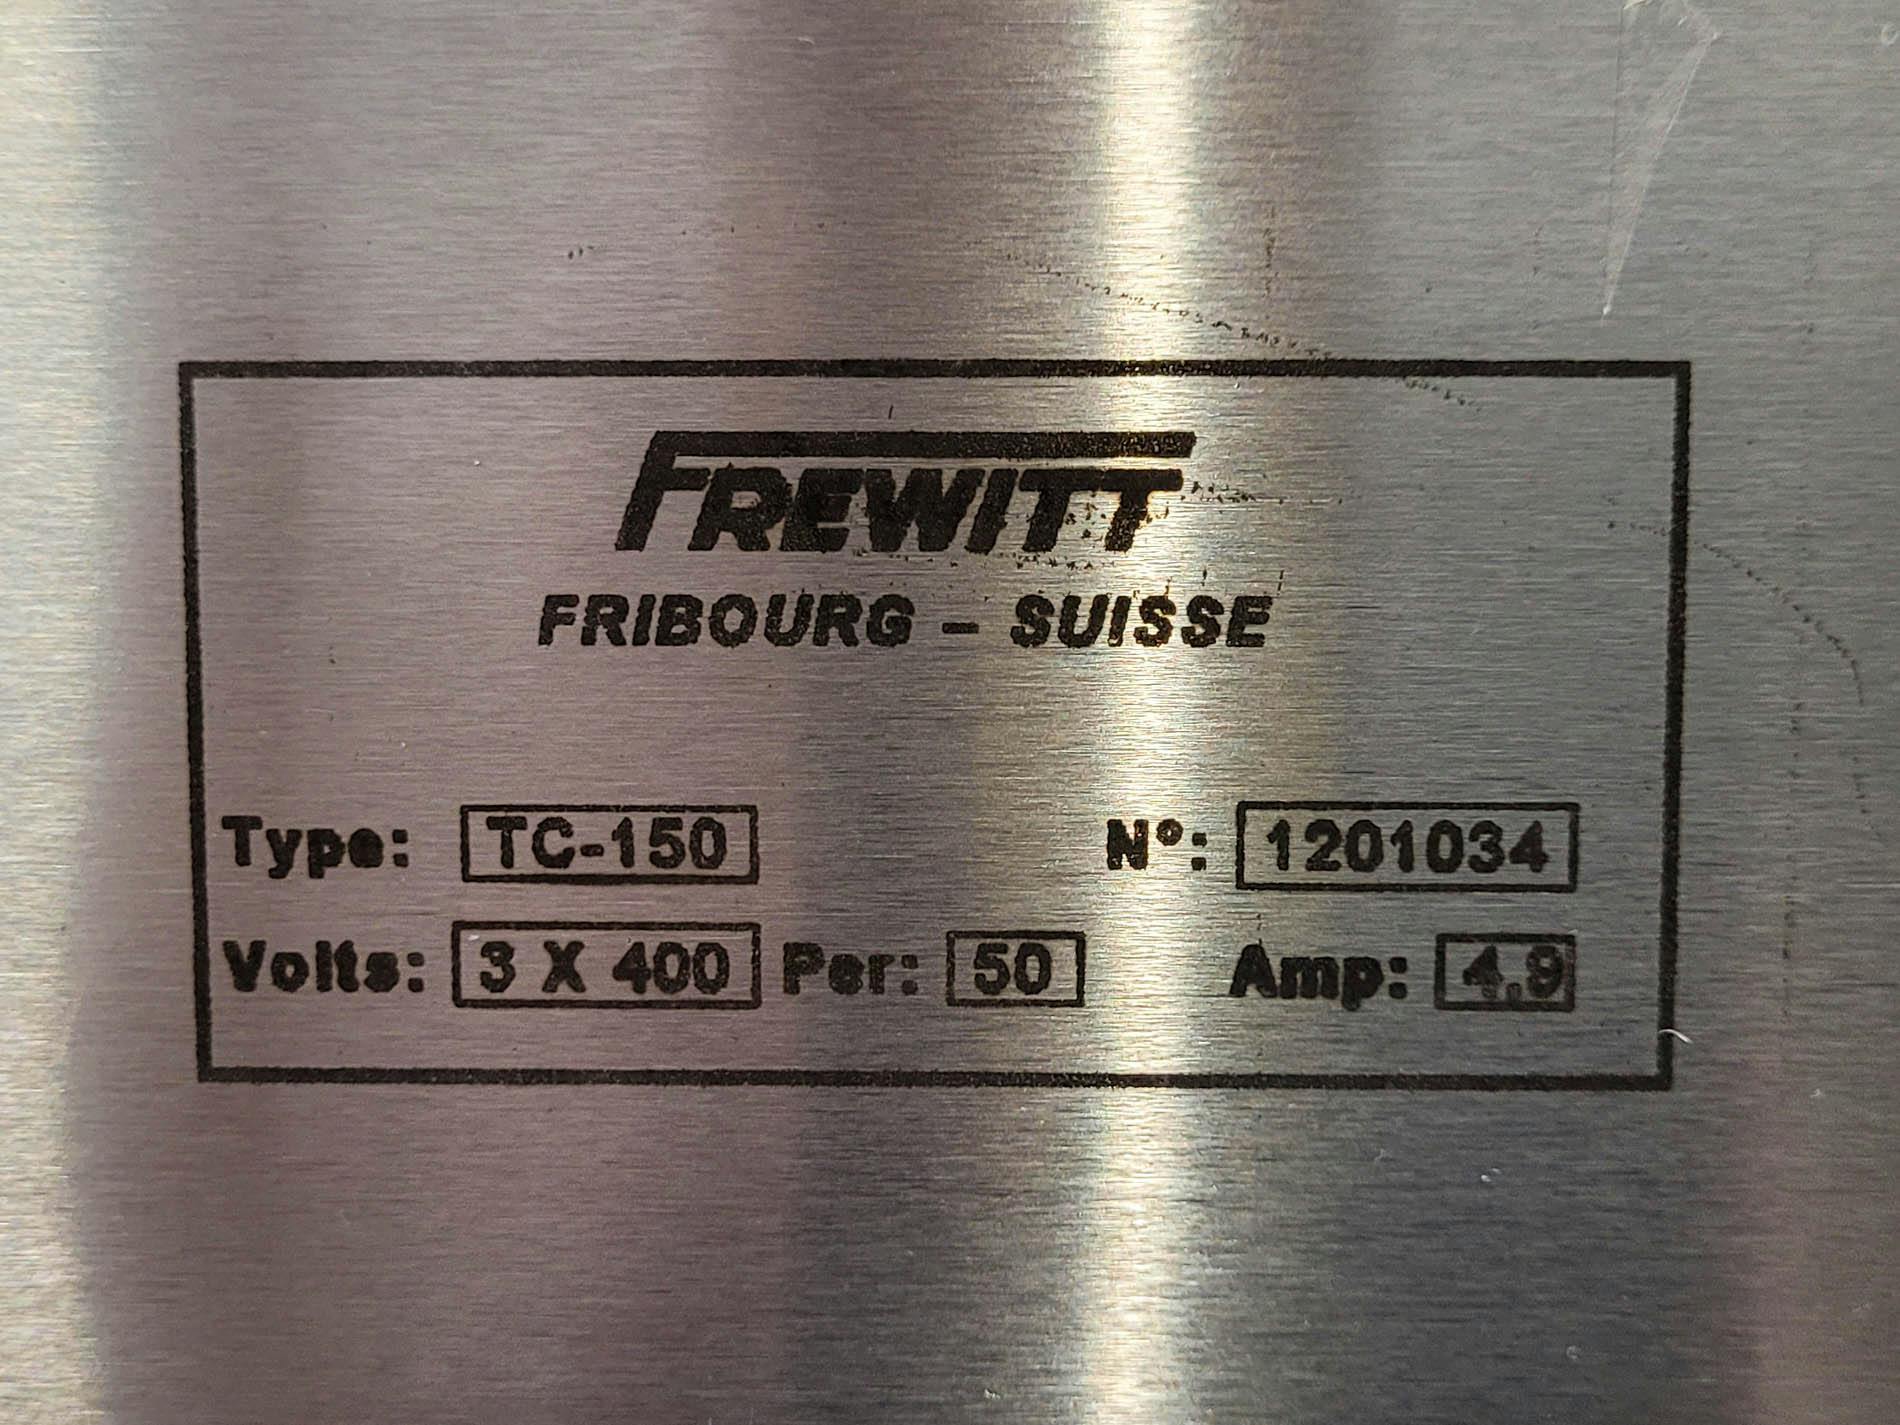 Frewitt Fribourg TC-150 - Peneira granuladora - image 15